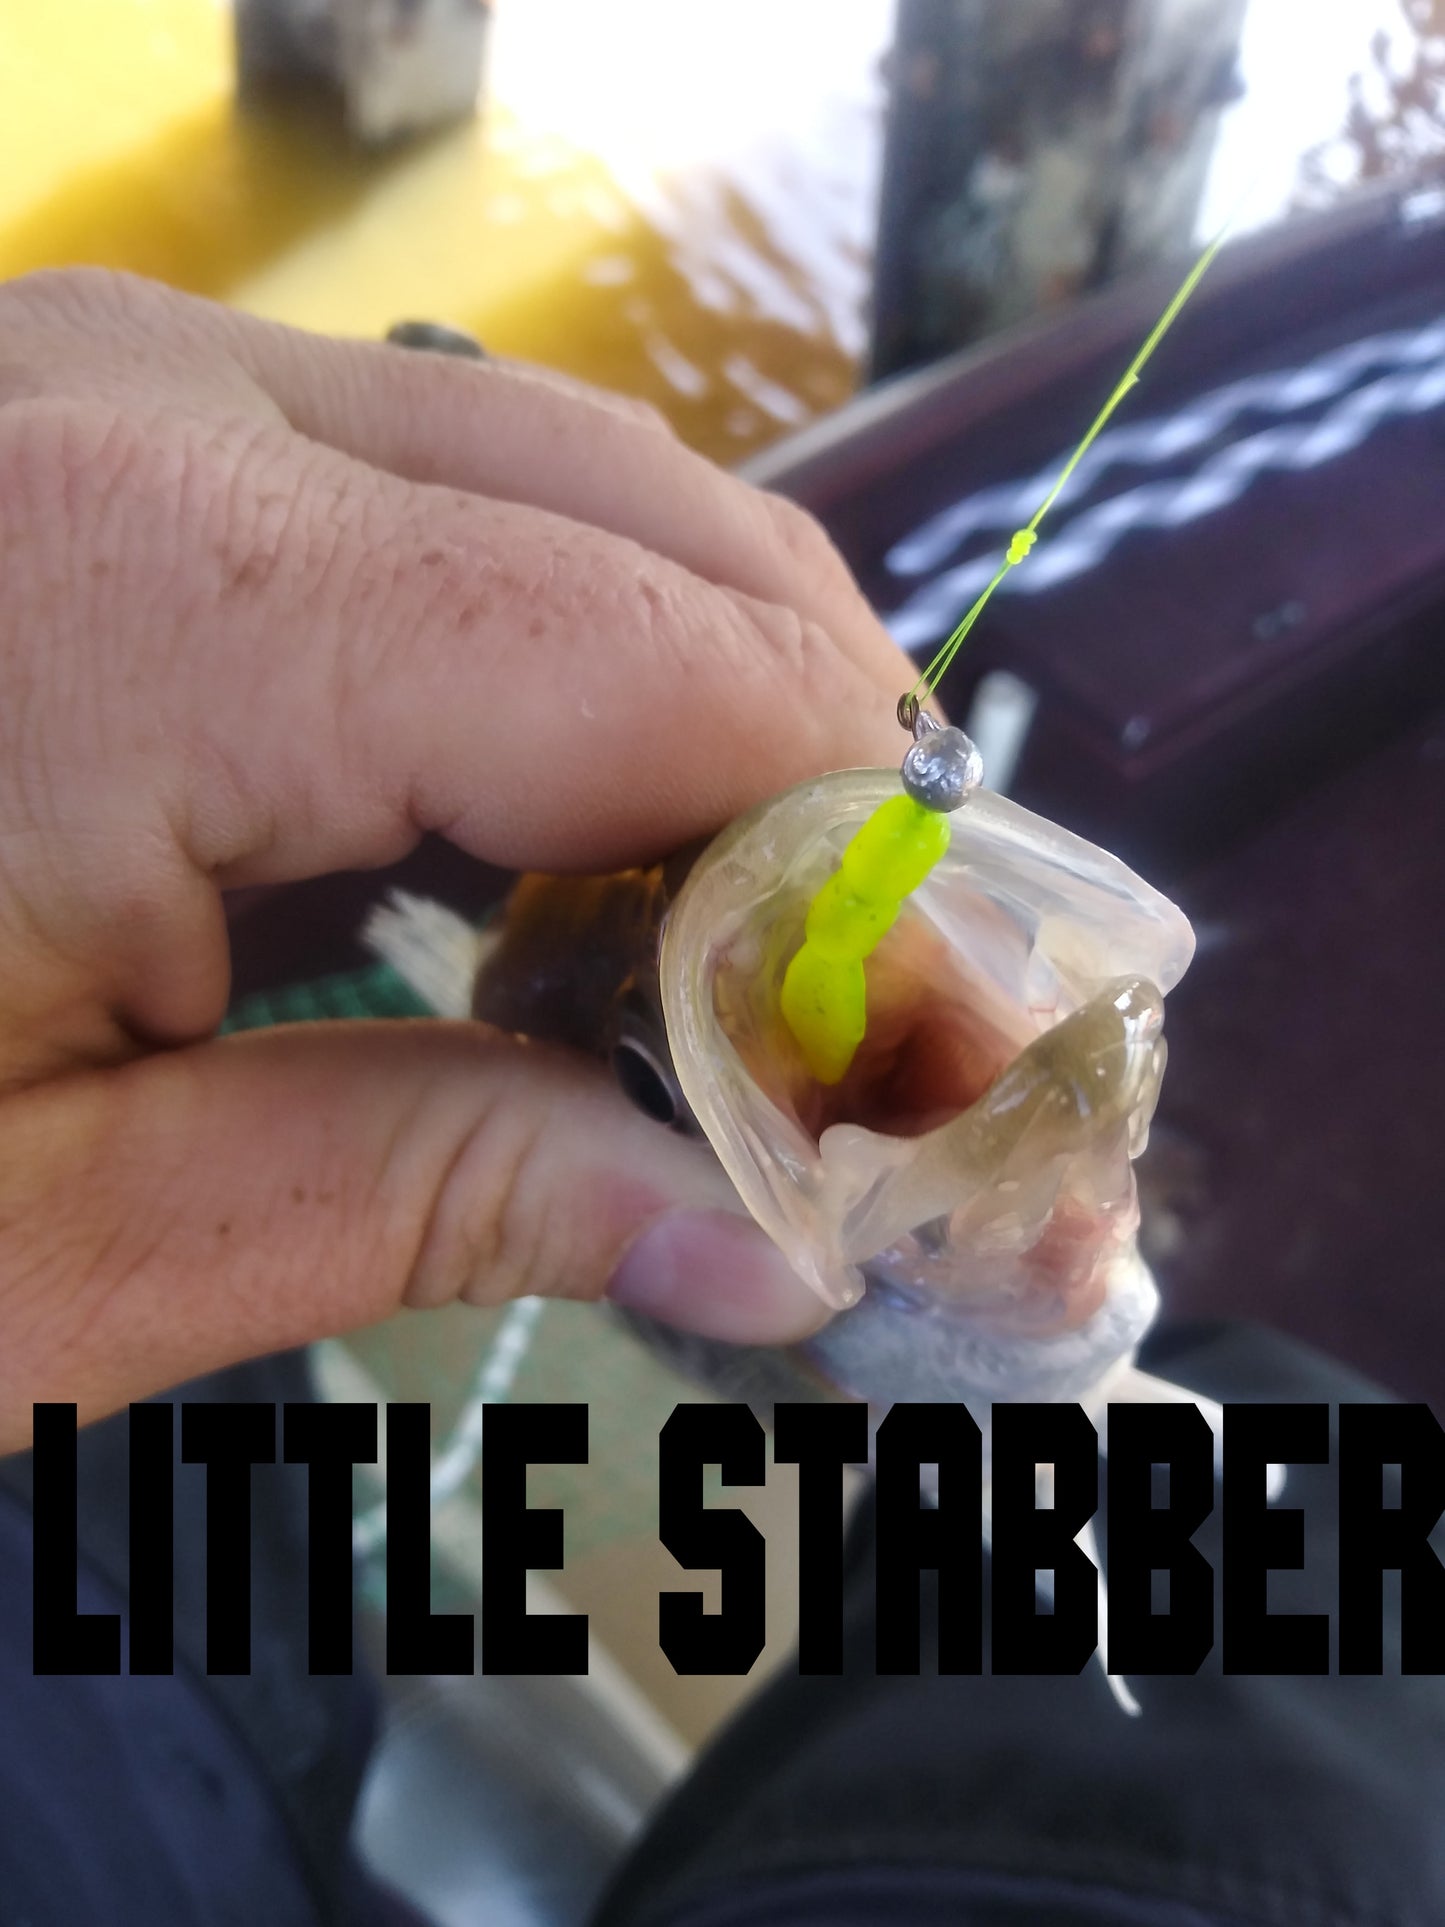 Little Stabber 1.5 inch